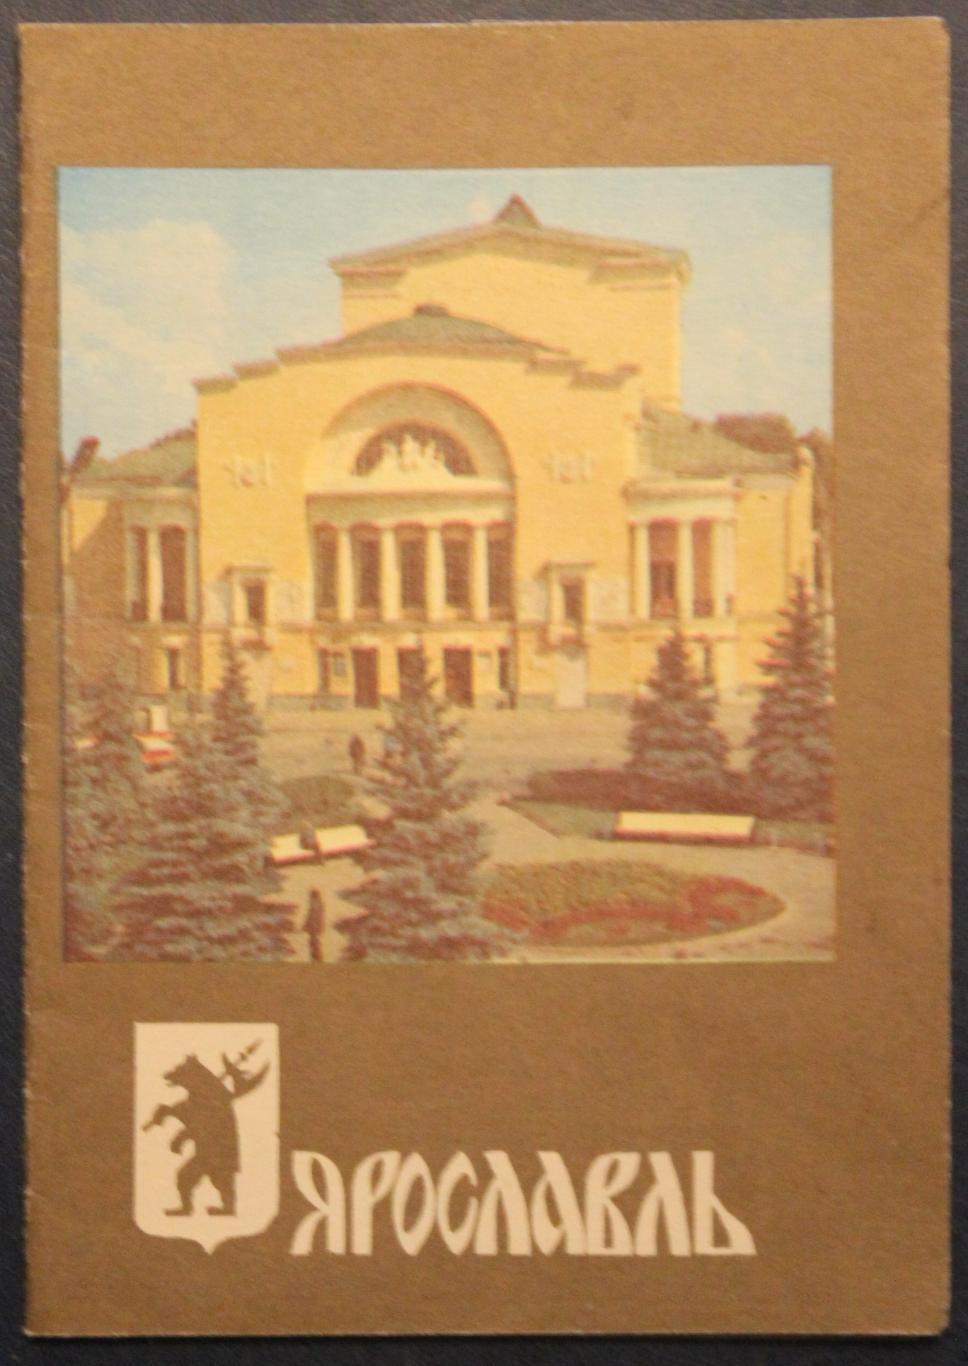 Сувенирный календарь-памятка Ярославль 1988